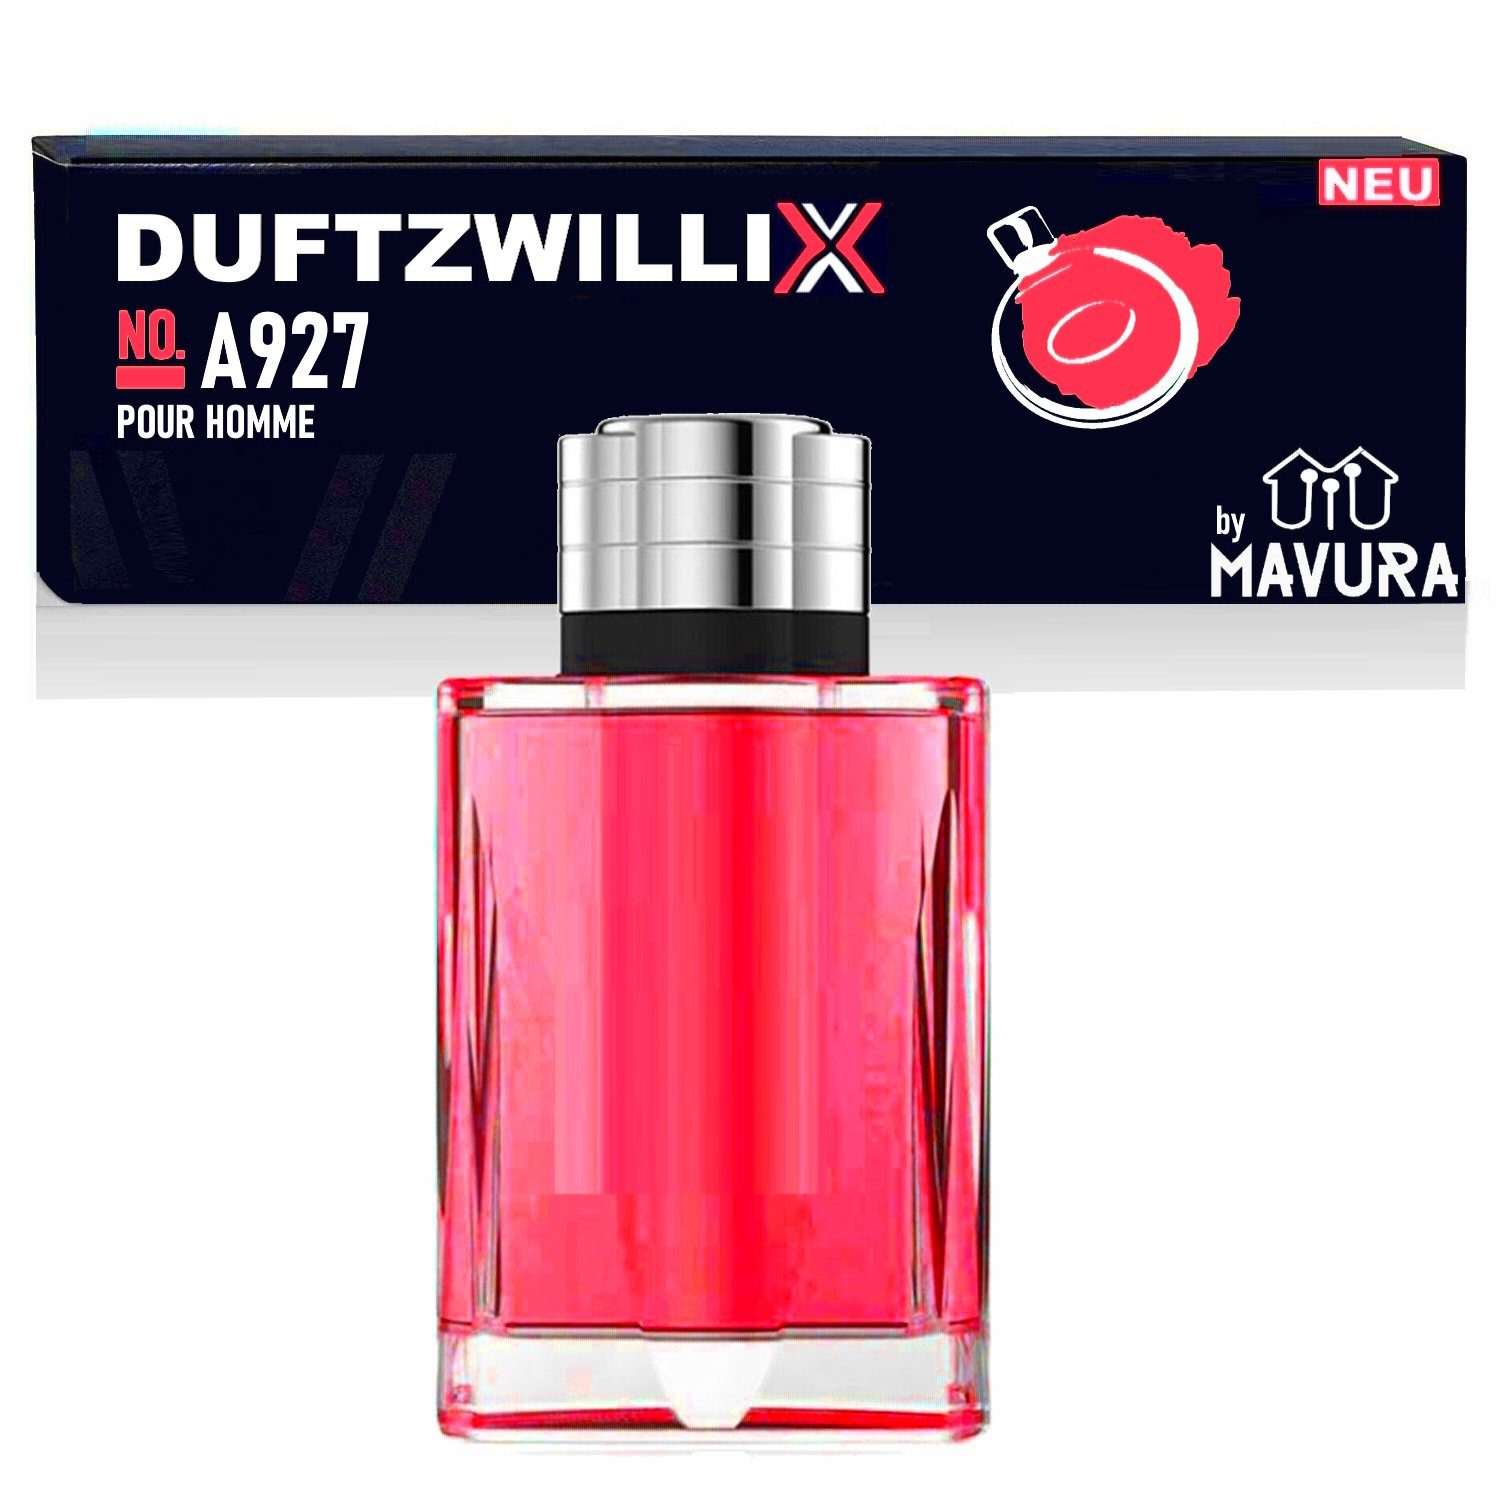 MAVURA Eau de Toilette DUFTZWILLIX No. A927 - Parfüm für Herren - ledrig würziger Duft, - 100ml - Duftzwilling / Dupe Sale